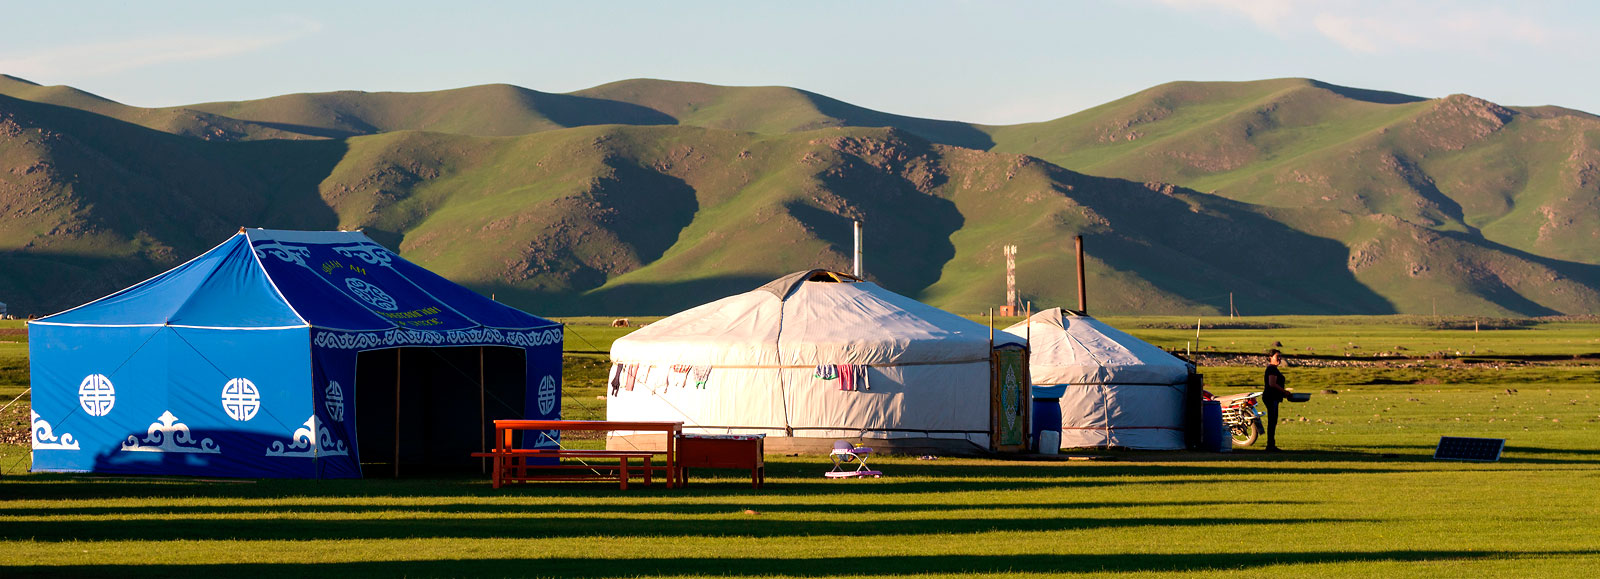 Yurtas en la estepa de Mongolia